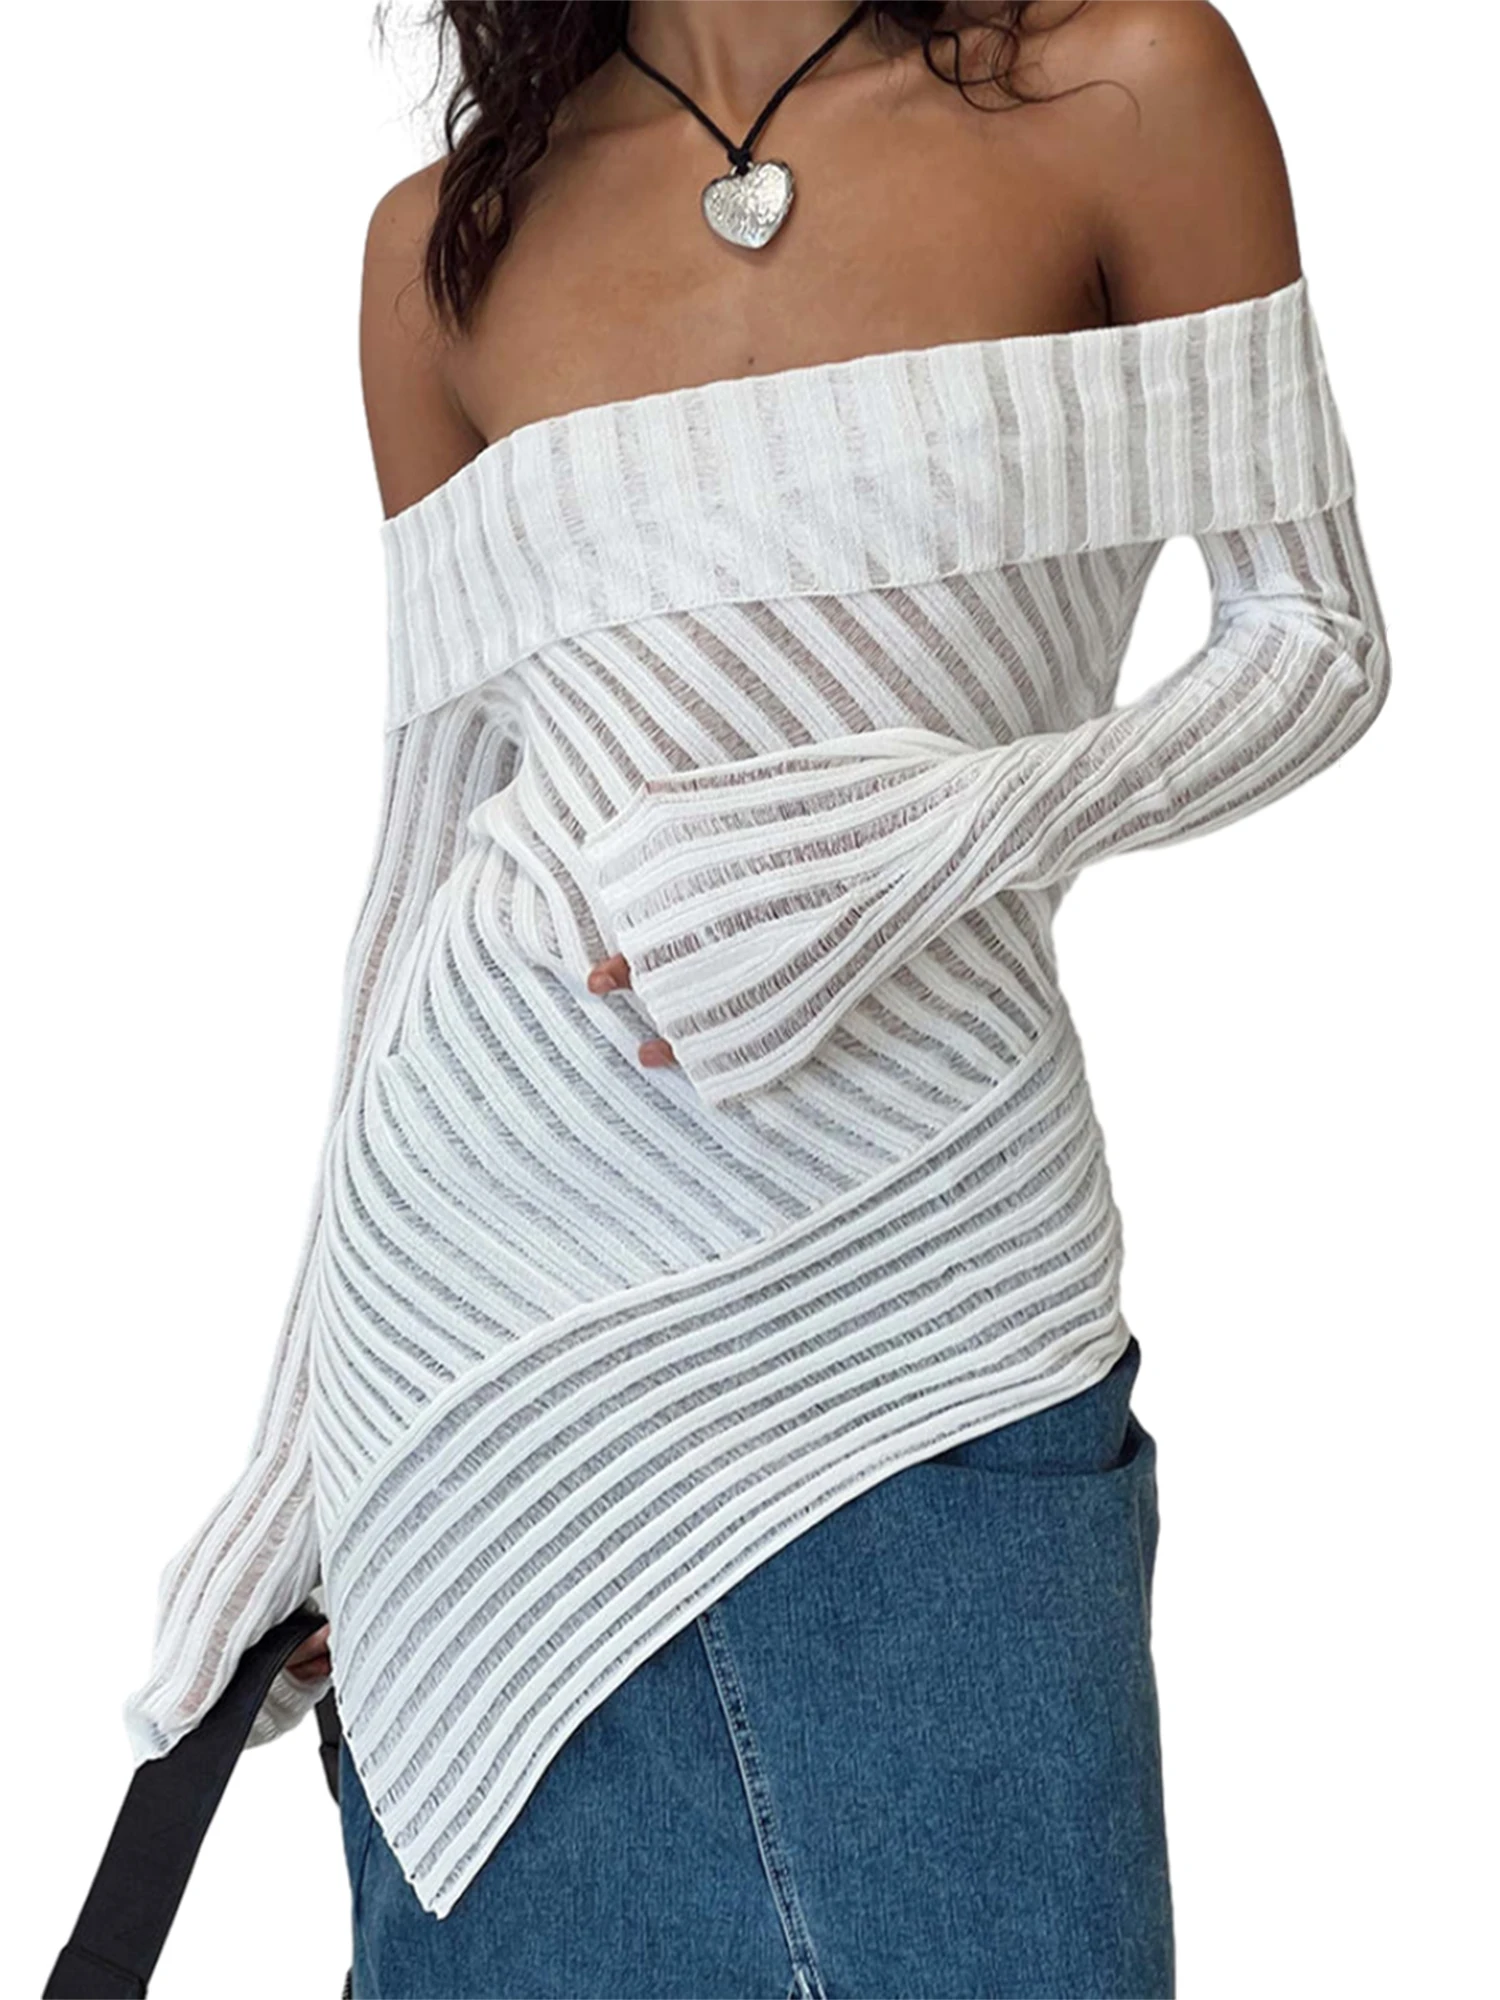 

Женский кружевной вязаный свитер с открытыми плечами и длинным рукавом-стильная вязаная накидка с вырезами для модного образа